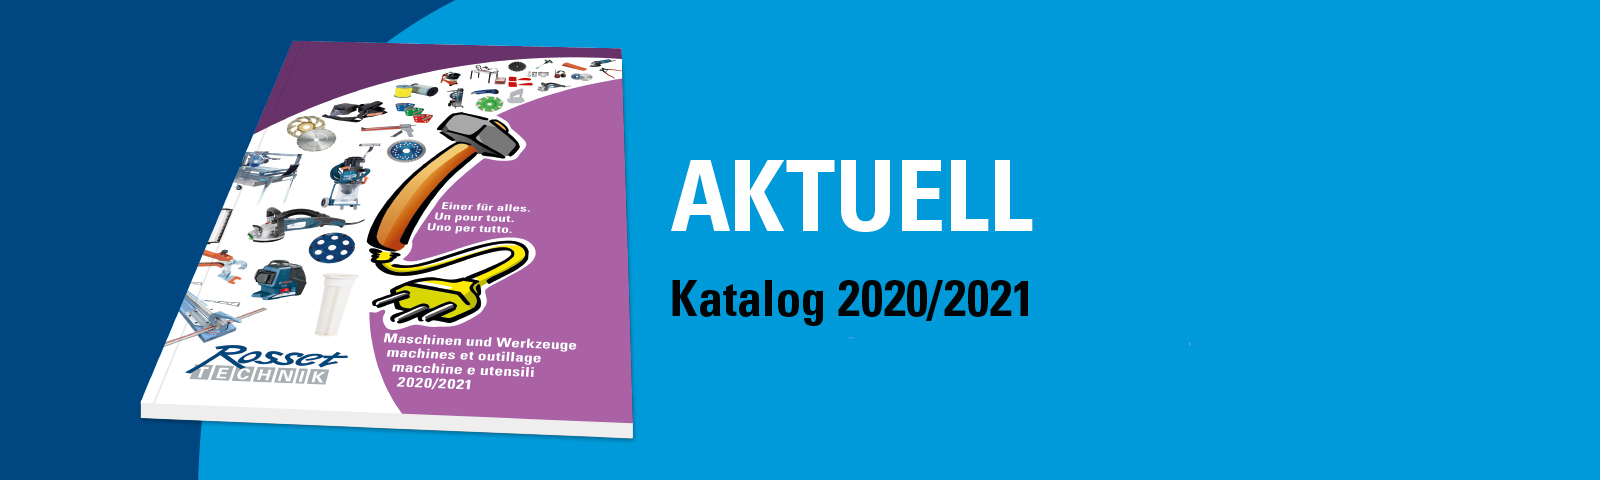 Katalog 2020/2021